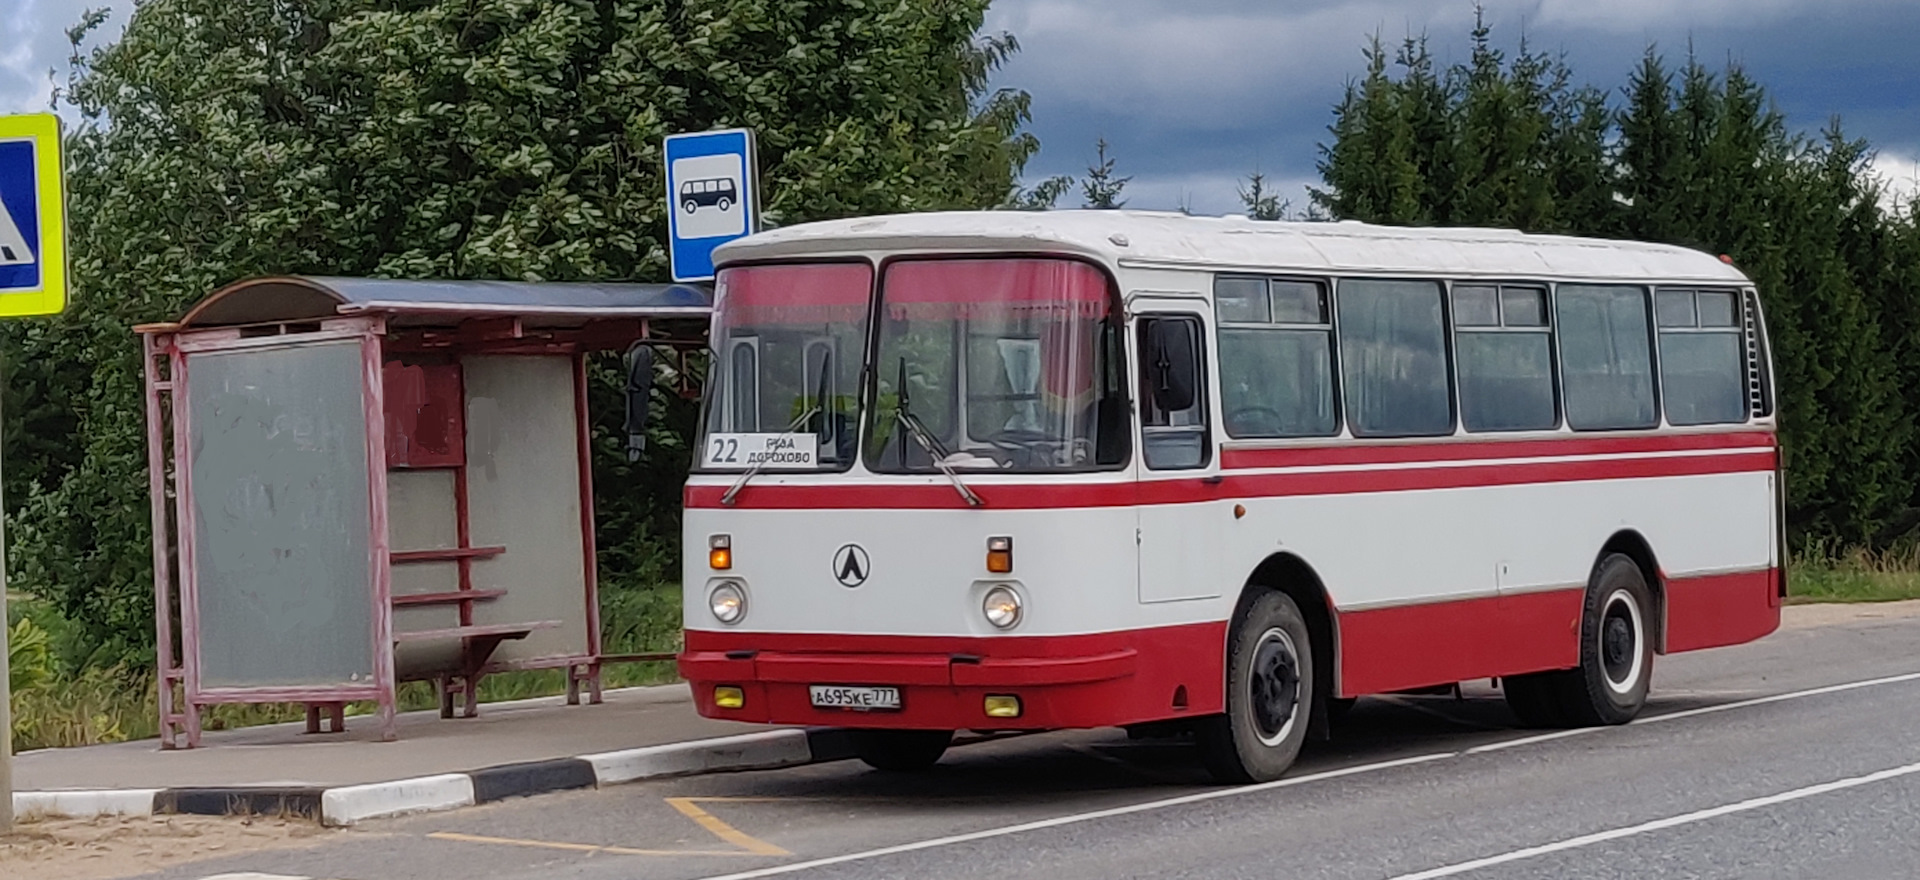 Лаз 699 автобус дальнего. ЛАЗ 699 турист. ЛАЗ 695н. Автобус ЛАЗ 699. ЛАЗ-695 турист.